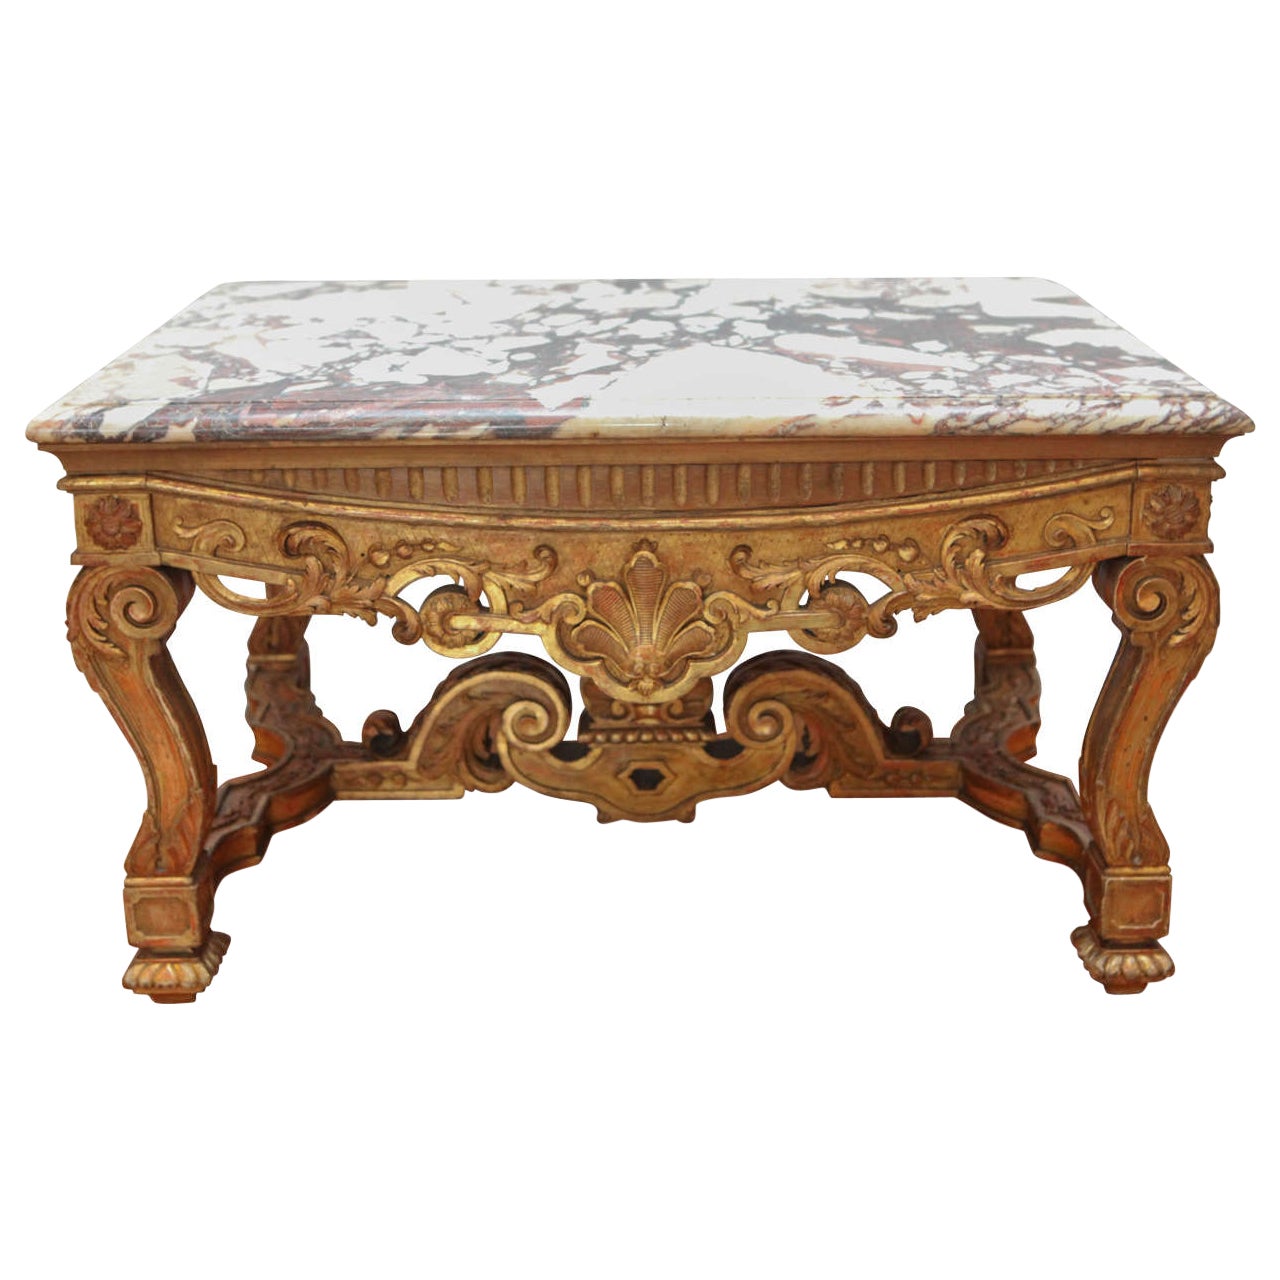 Table d'appoint/table basse française en bois doré du XIXe siècle